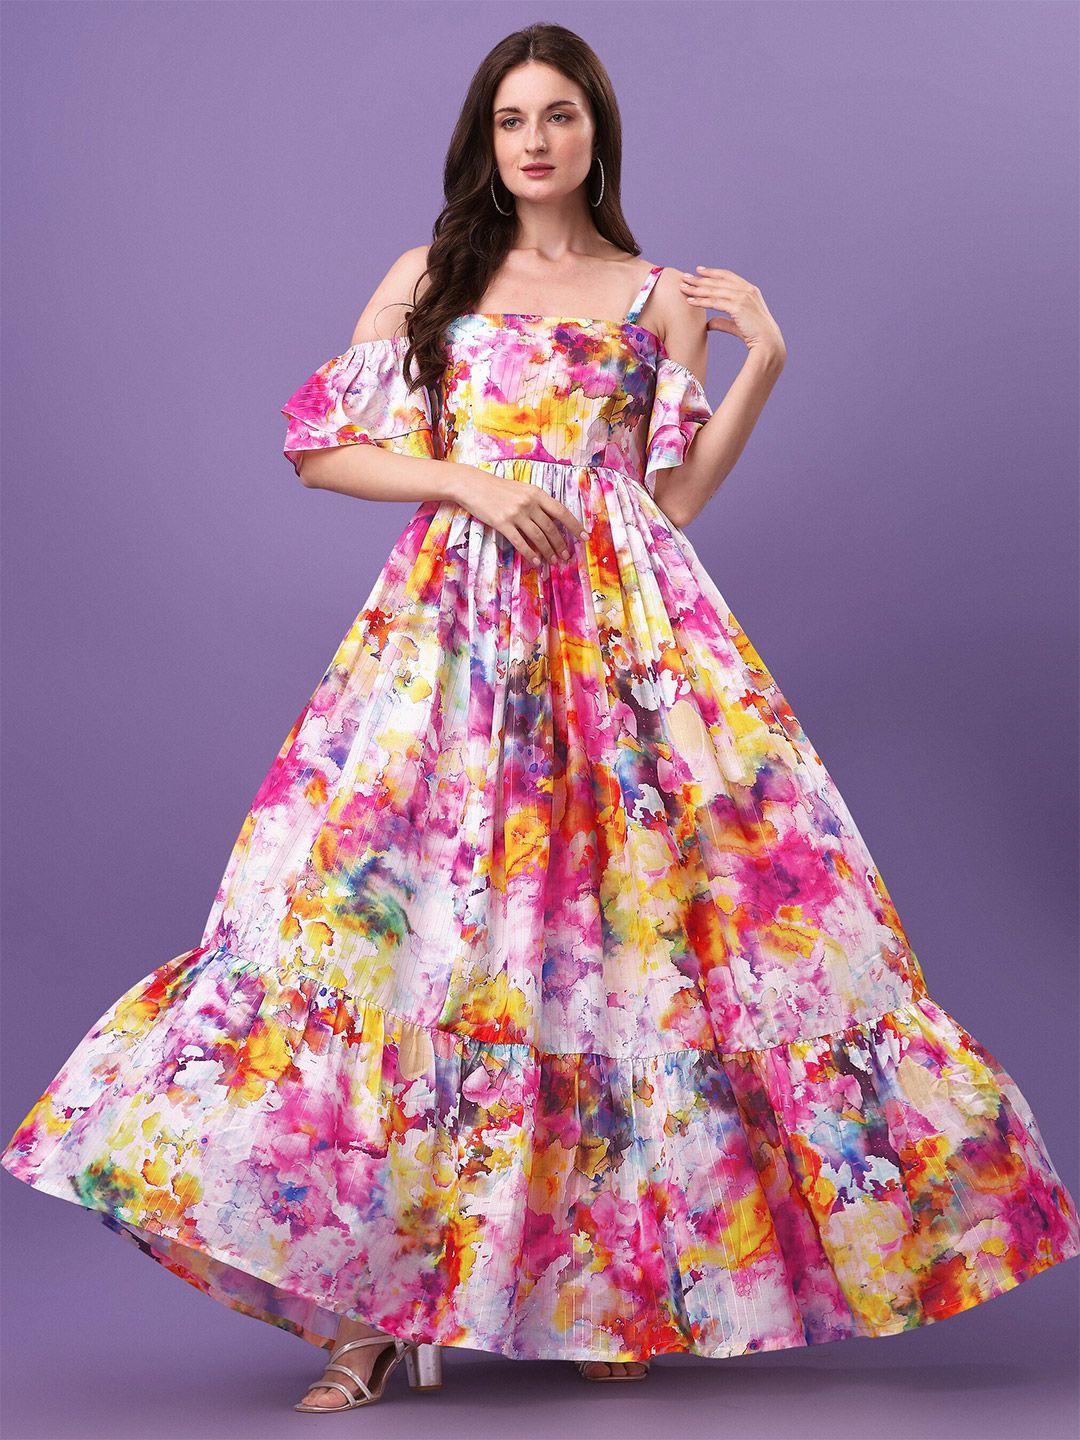 aspora women pink & blue floral organic cotton maxi dress